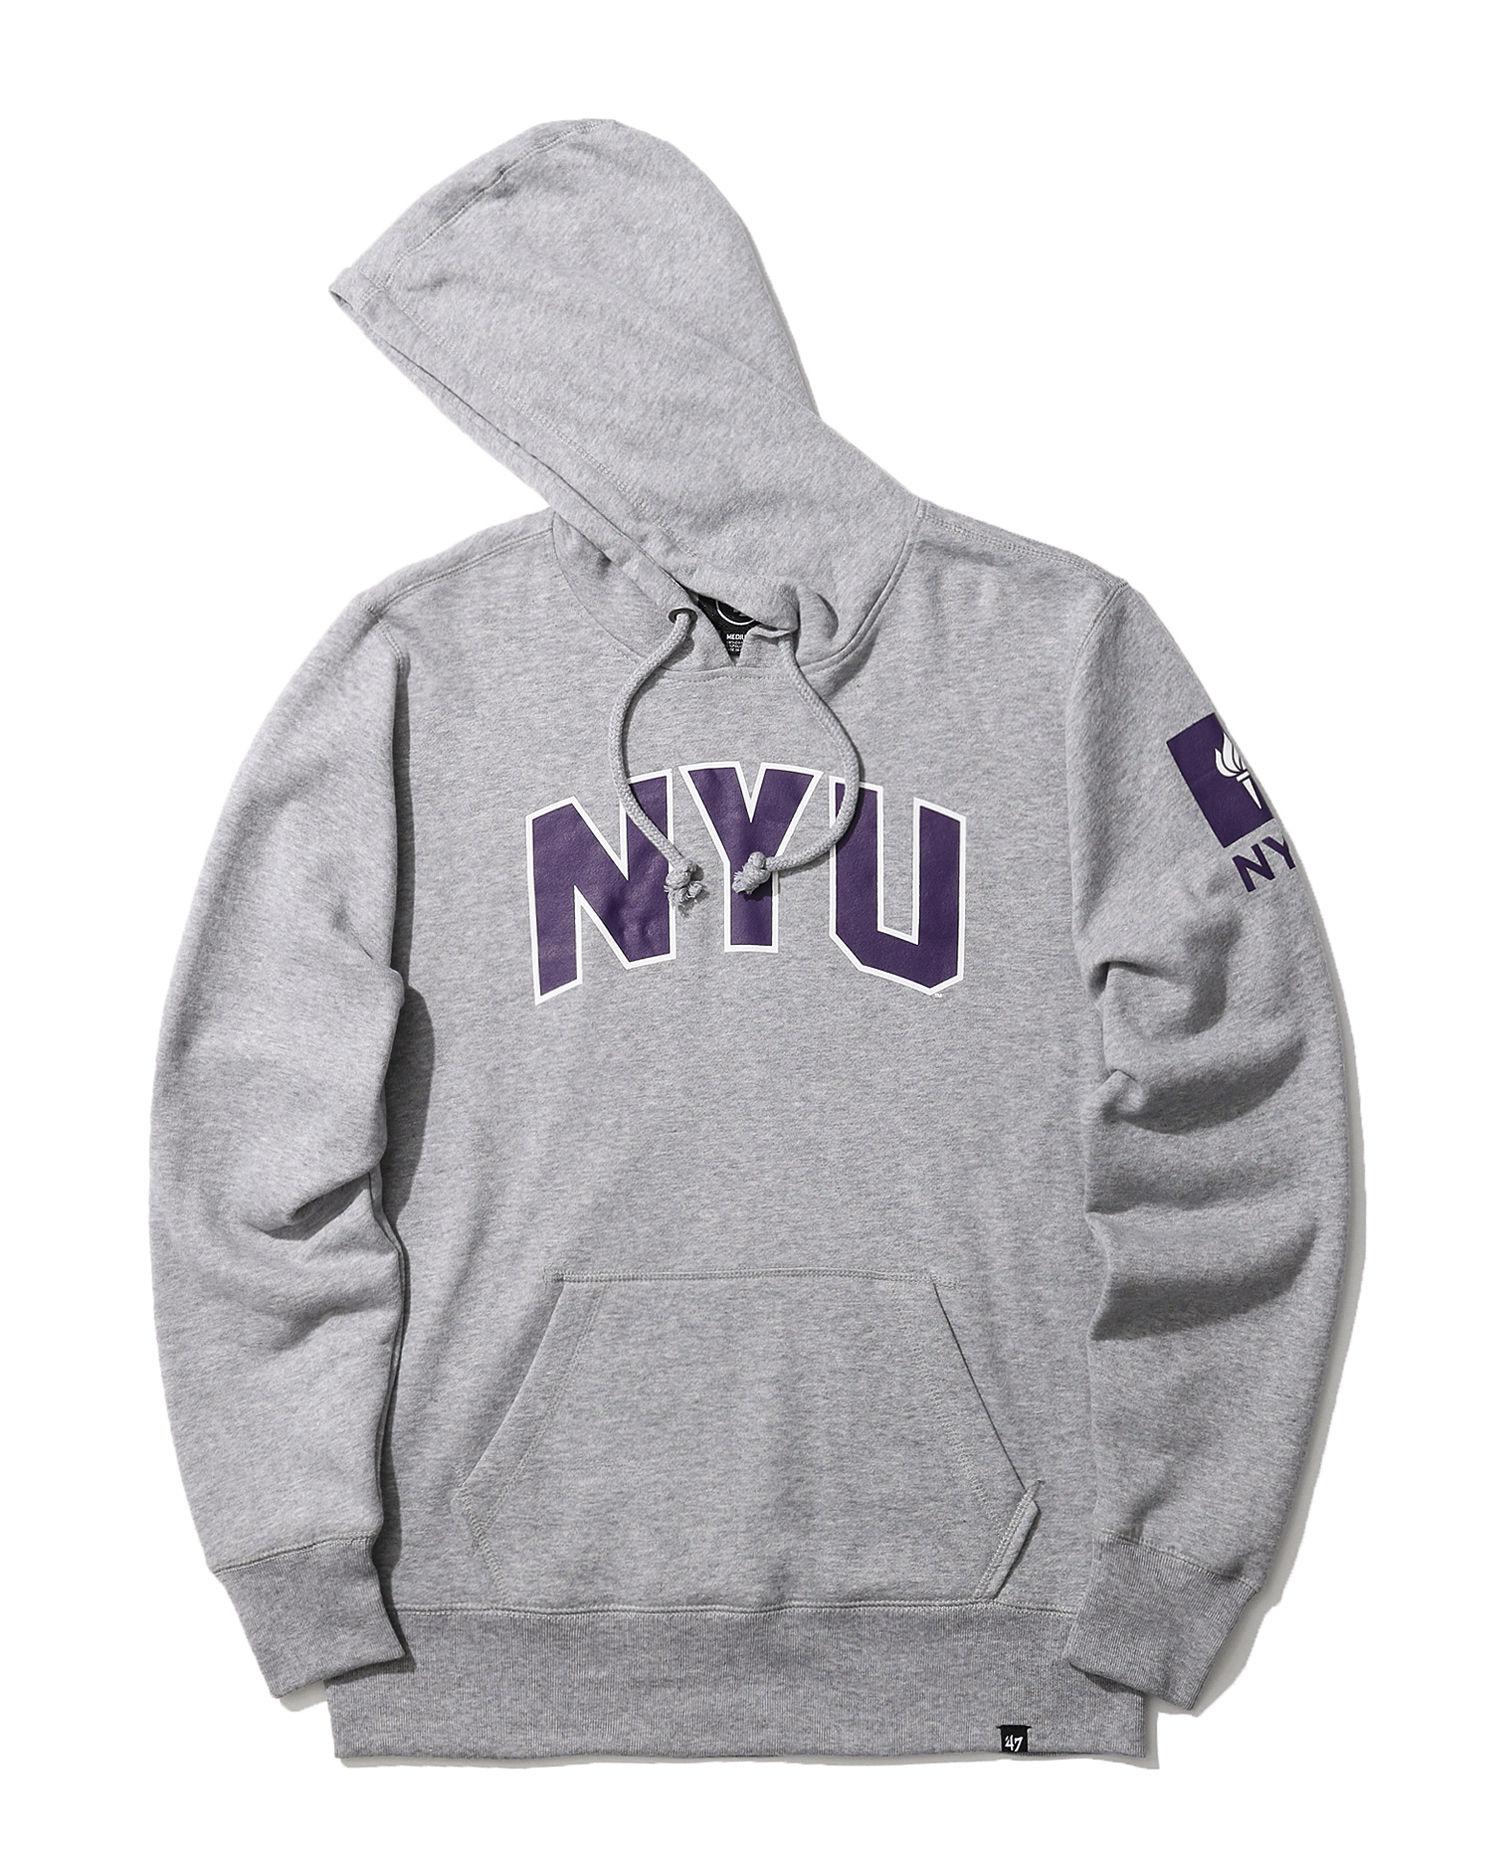 NYU hoodie by '47